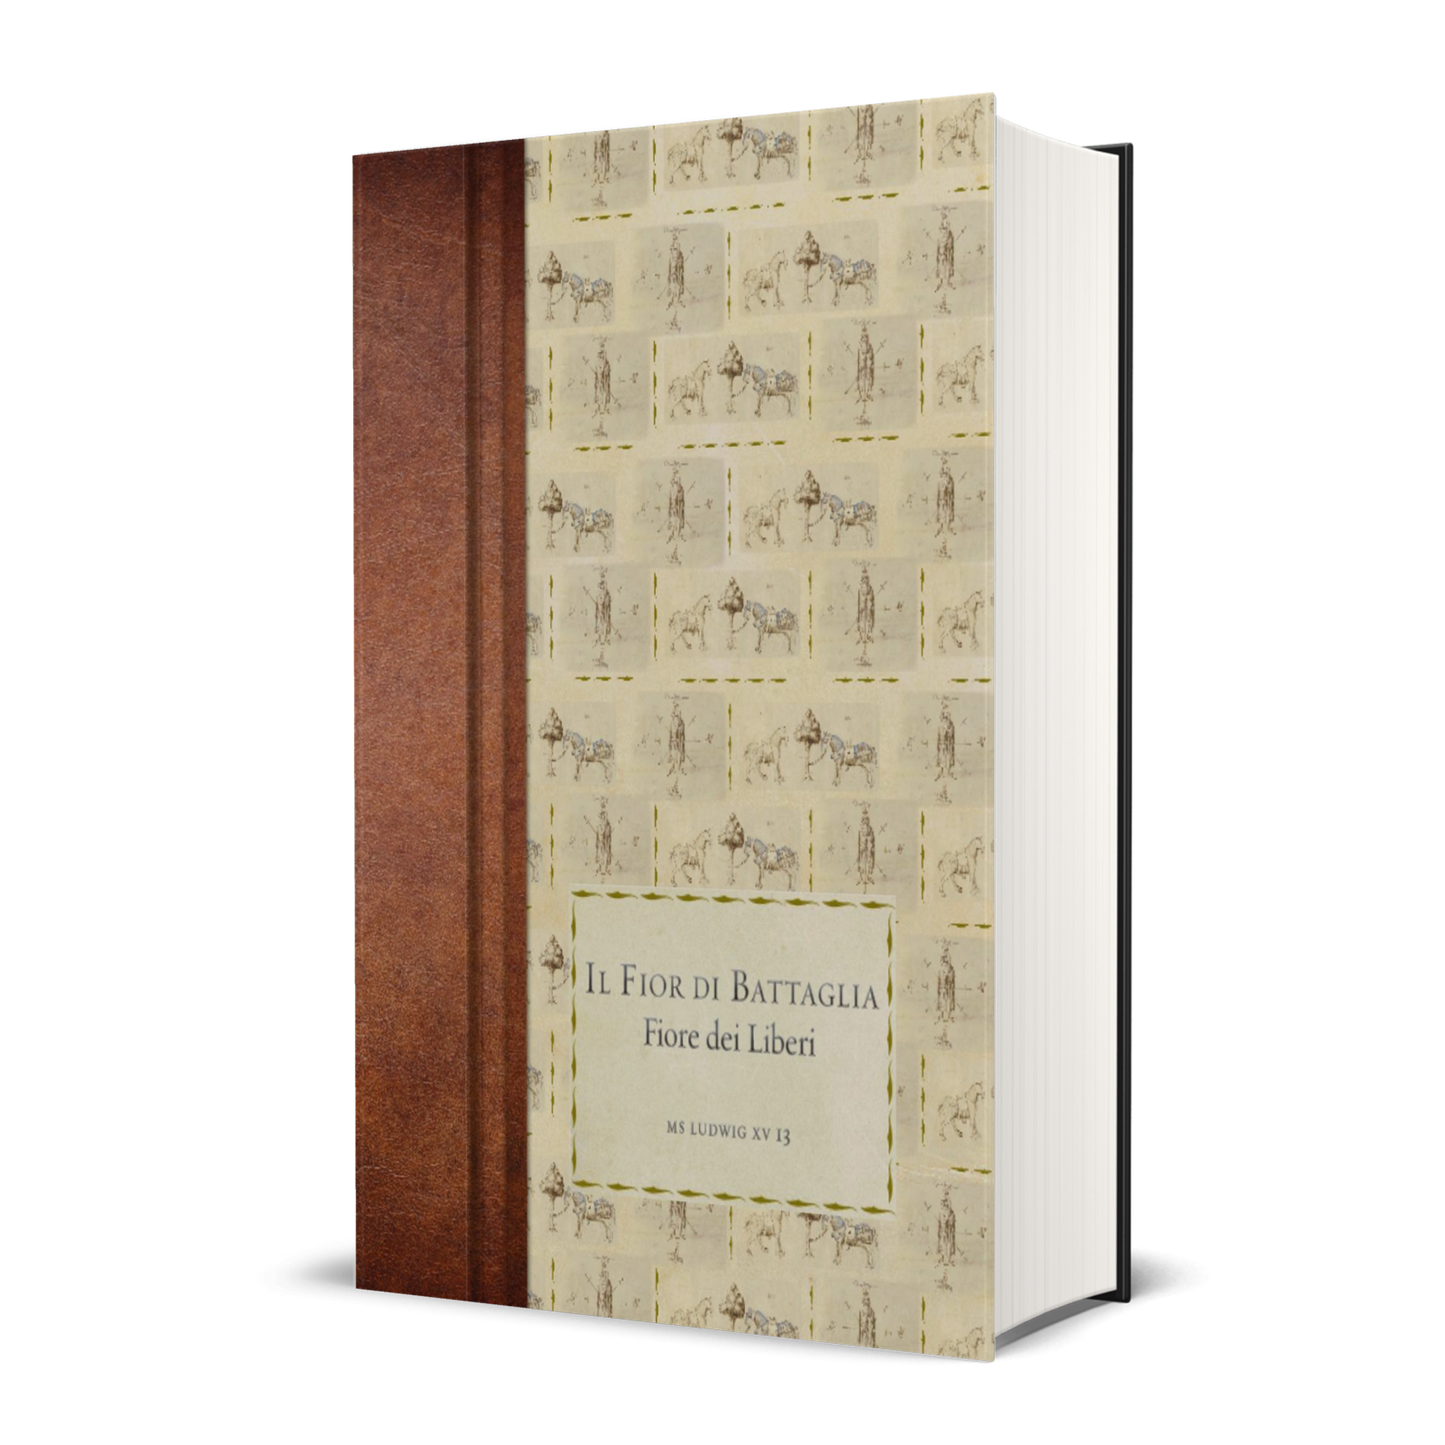 Il Fior di Battaglia, MS Ludwig XV 13 (Italian edition), by Fiore dei Liberi (hardback)